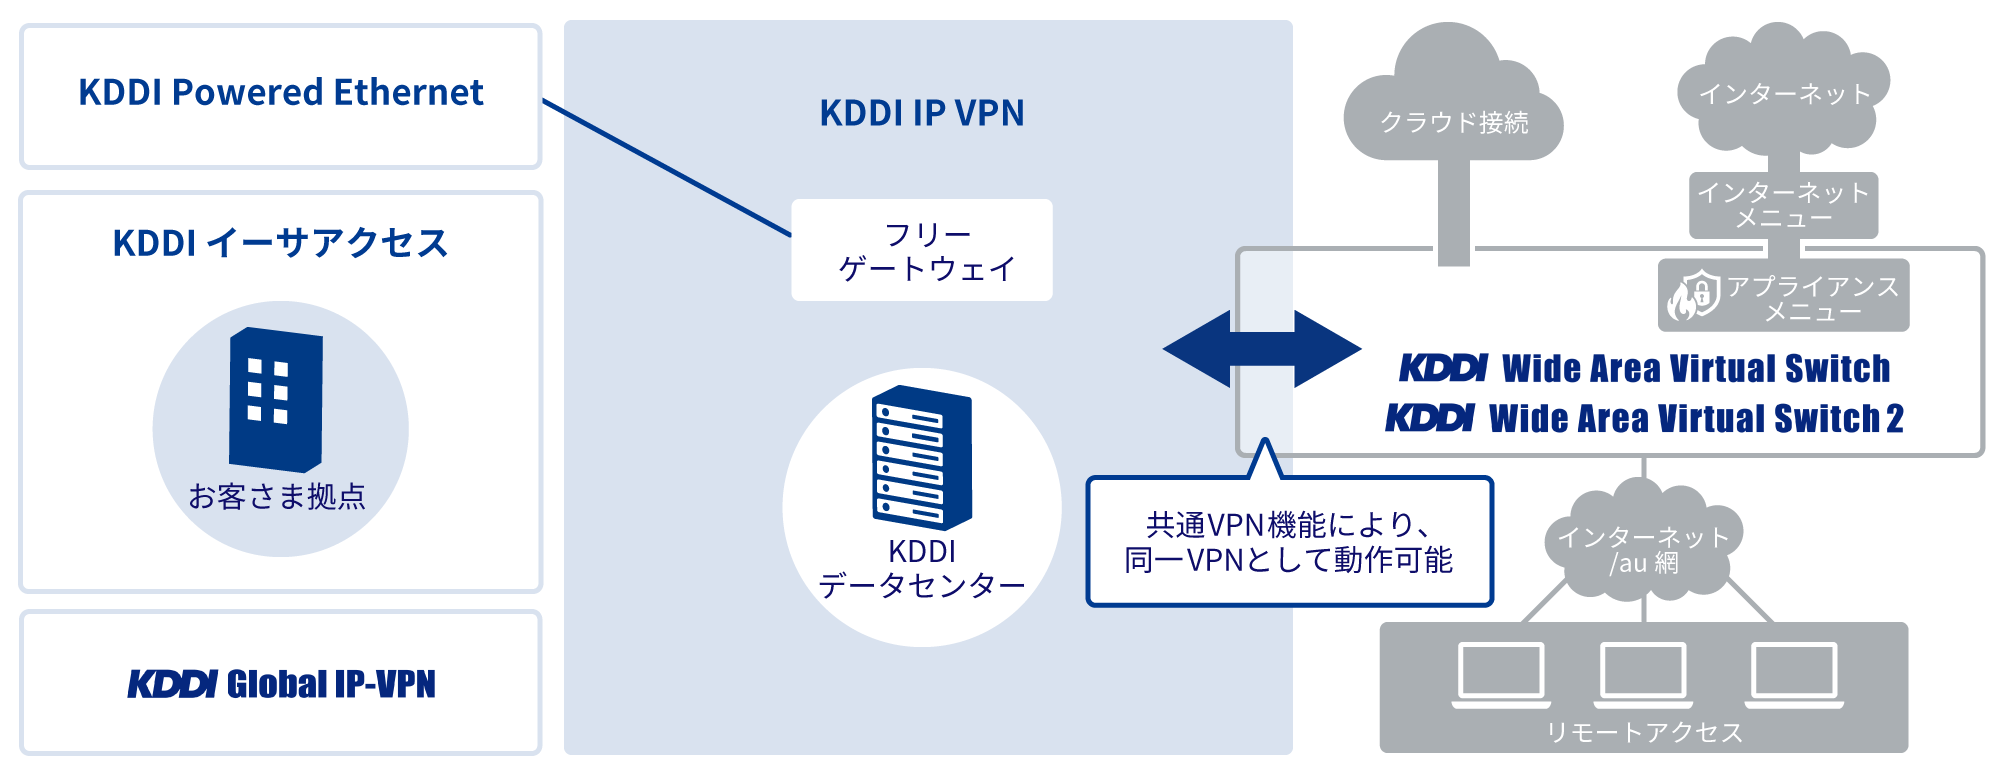 共通VPN機能により、同一VPNとして動作可能